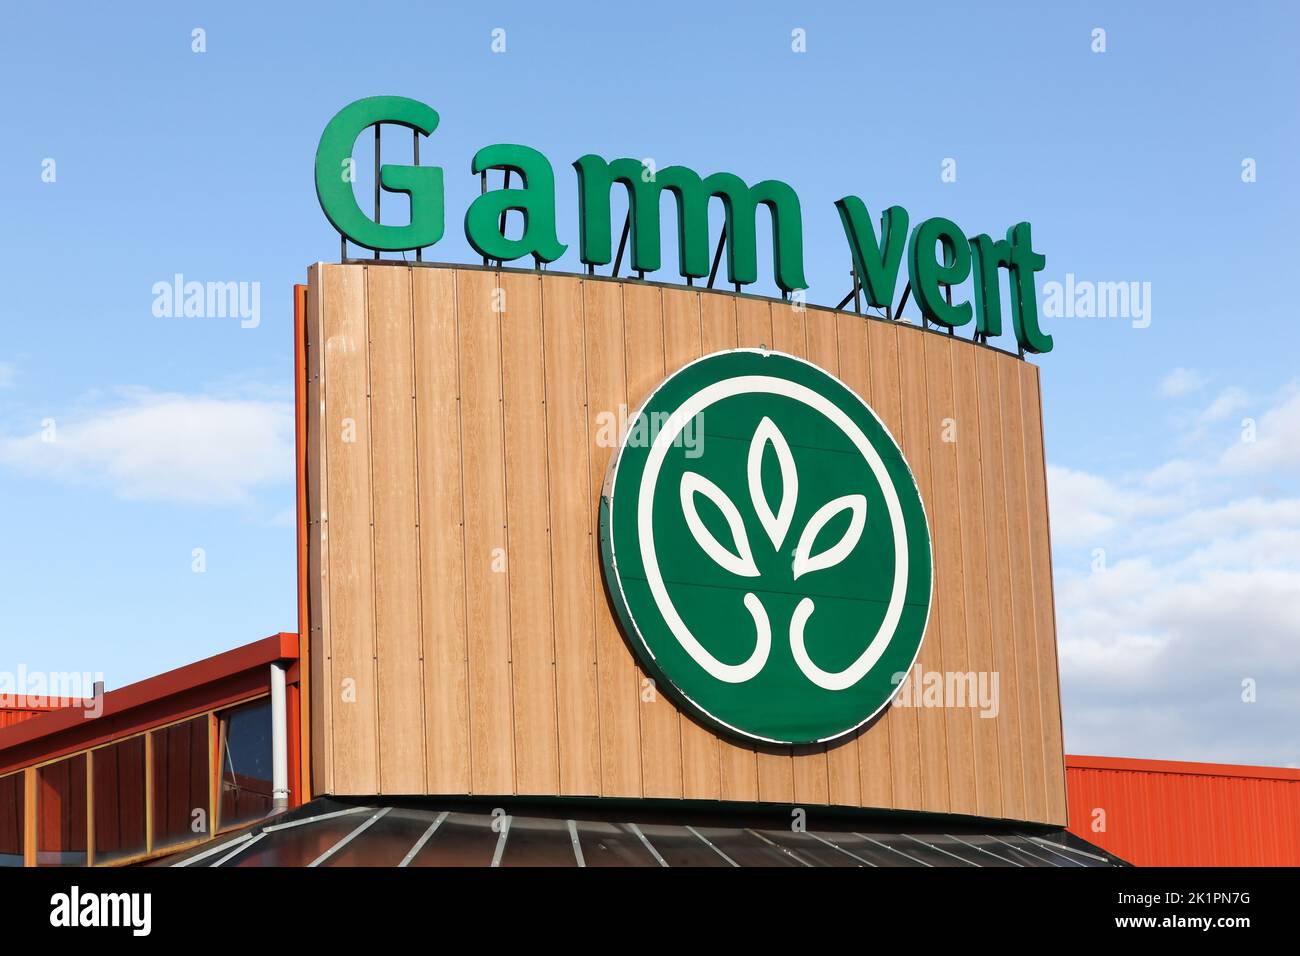 Montelimar, Francia - 2 de noviembre de 2018: GAMM Vert es una marca de centro de jardinería especializada en autoservicios agrícolas, tiendas de animales y productos locales Foto de stock